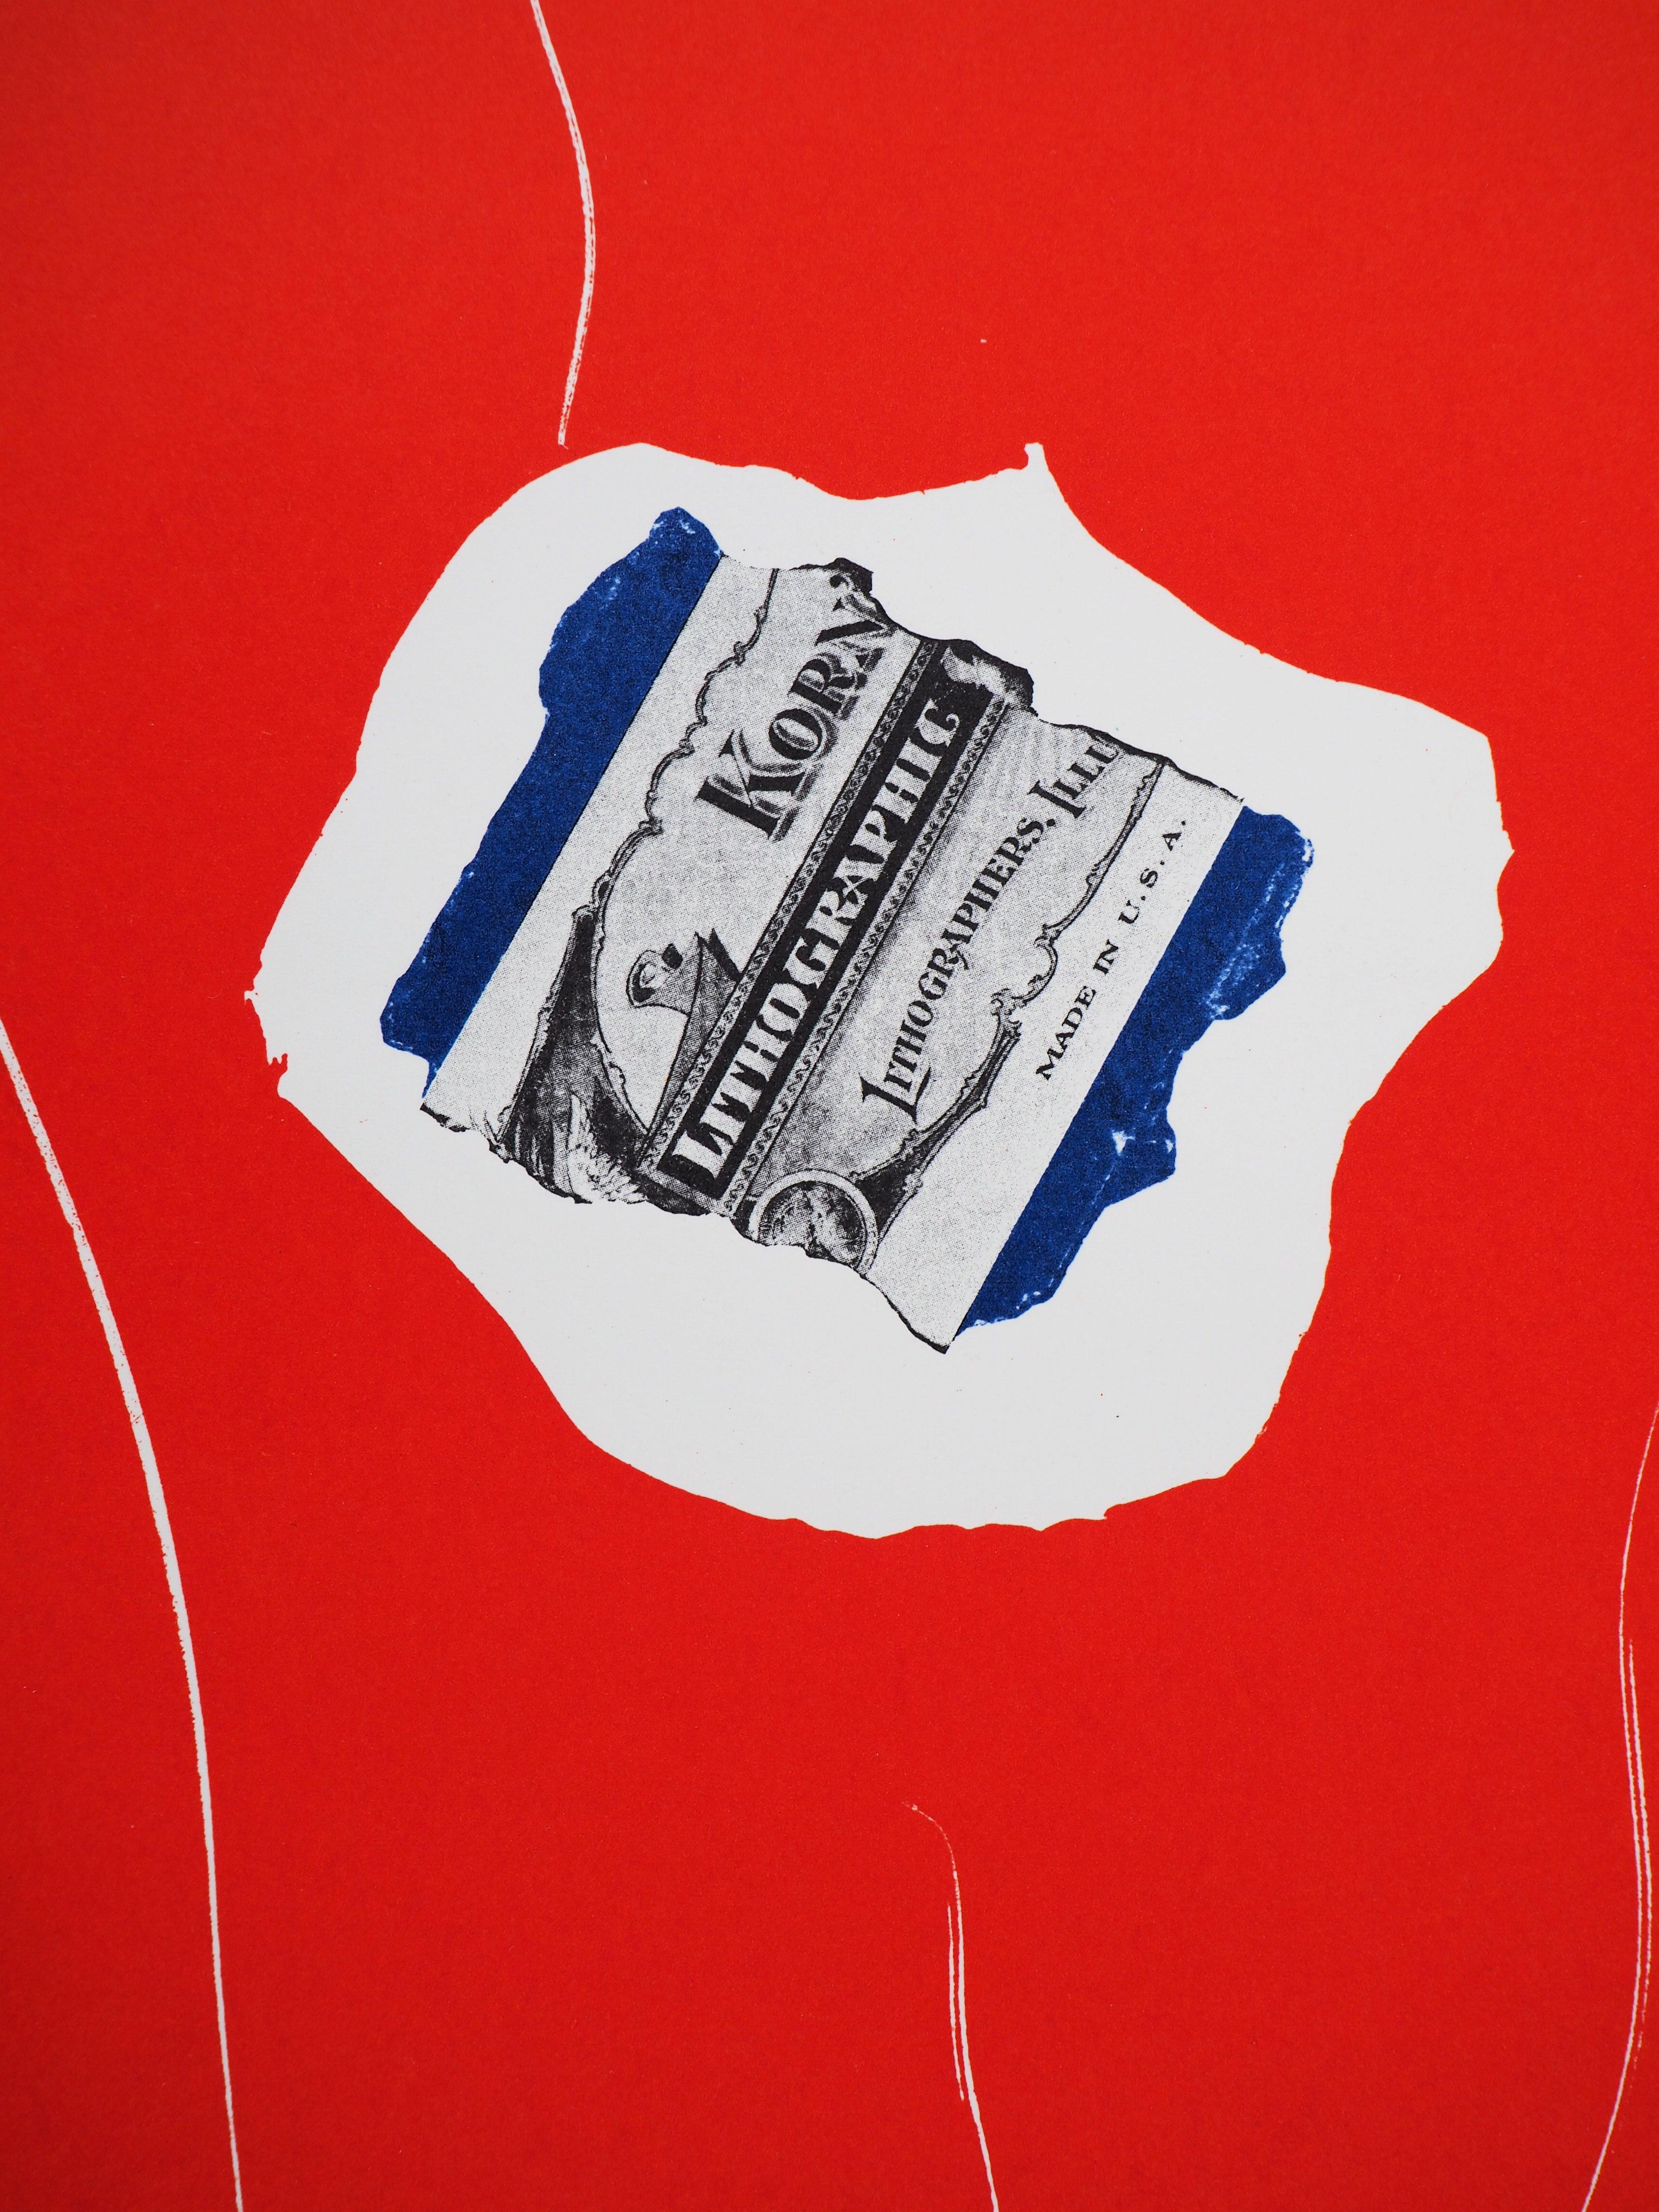 Robert MOTHERWELL
Tricolore avec dollar, 1973

Lithographie originale 
(Imprimé dans l'atelier de Mourlot)
Signature imprimée dans la plaque
Sur papier épais 31 x 24 cm (c. 12 x 10 inch)
Édité par San Lazzaro en 1973

Excellent état